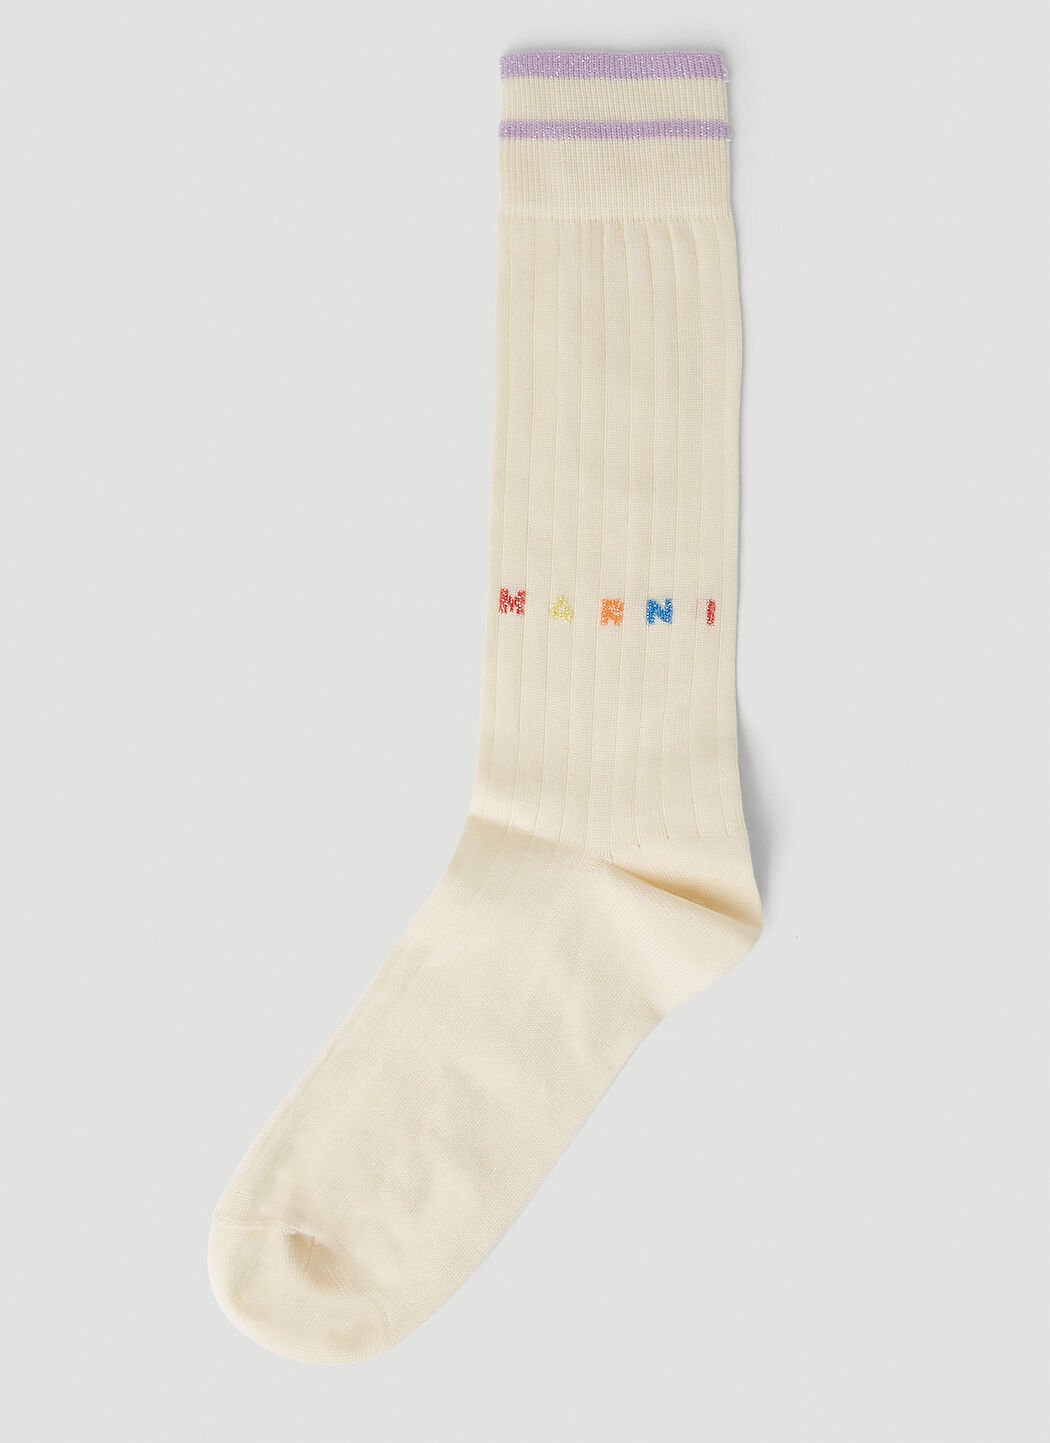 Marni Logo Intarsia Socks Navy mni0151035